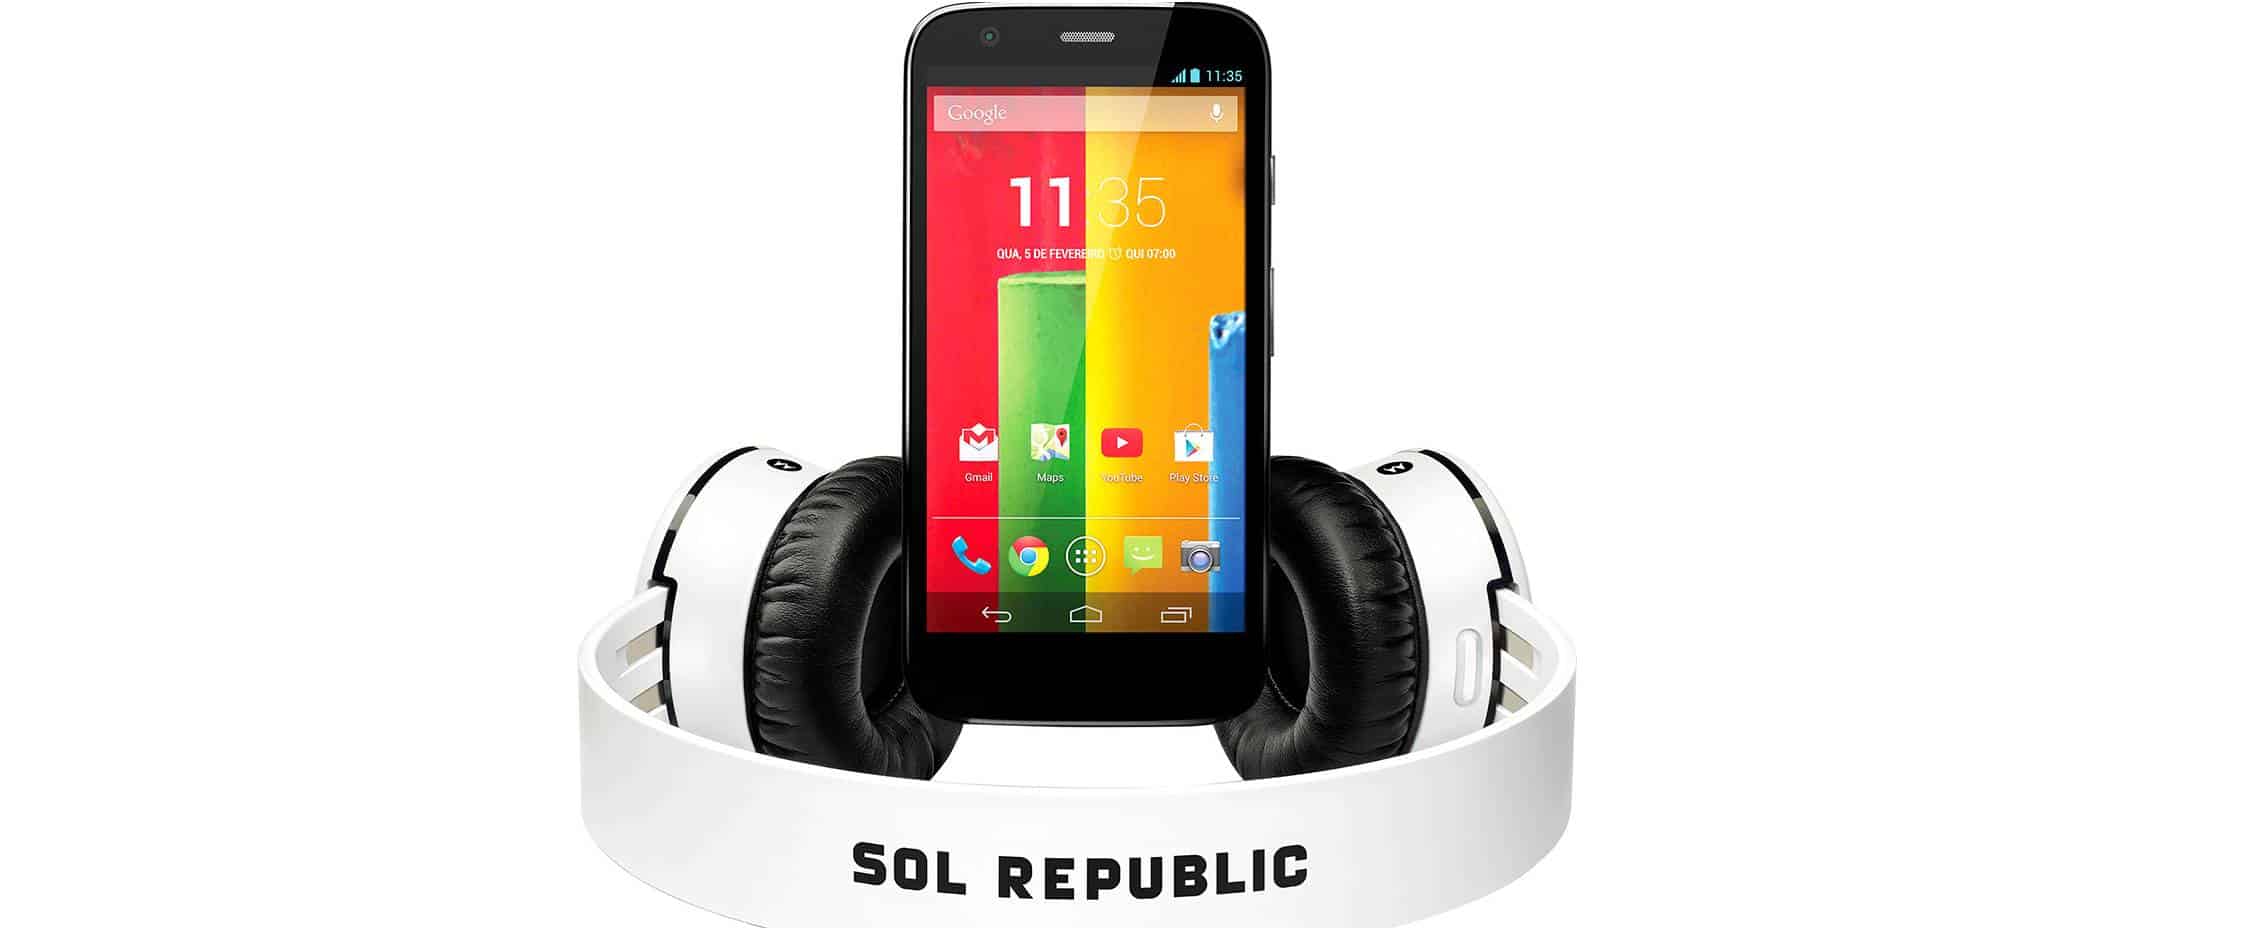 Dica de compra: Motorola Moto G com fone bluetooth por R$ 699 1